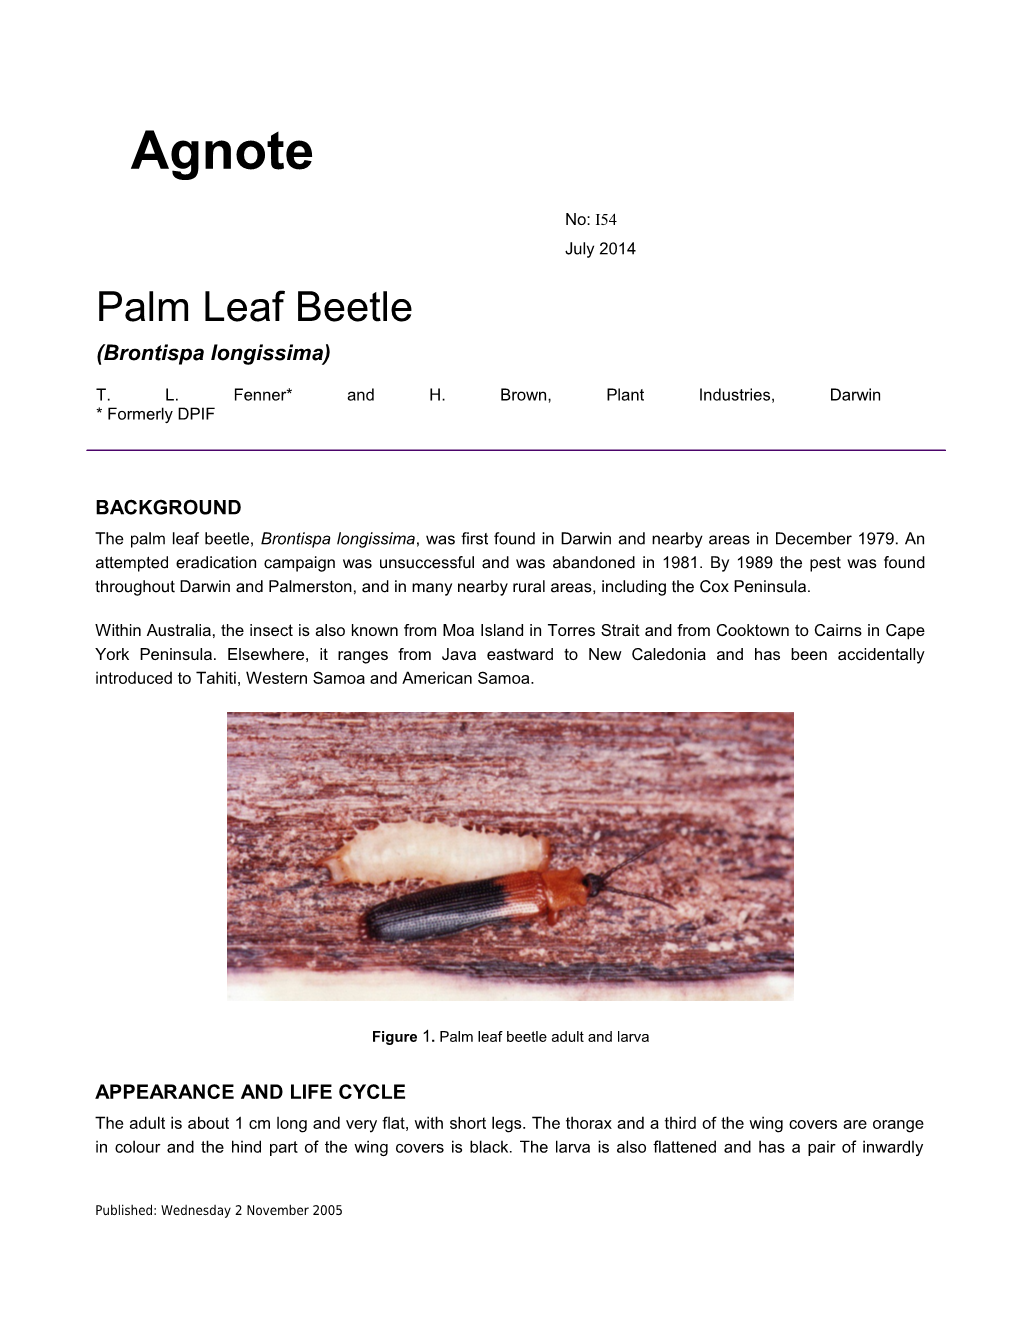 Palm Leaf Beetle